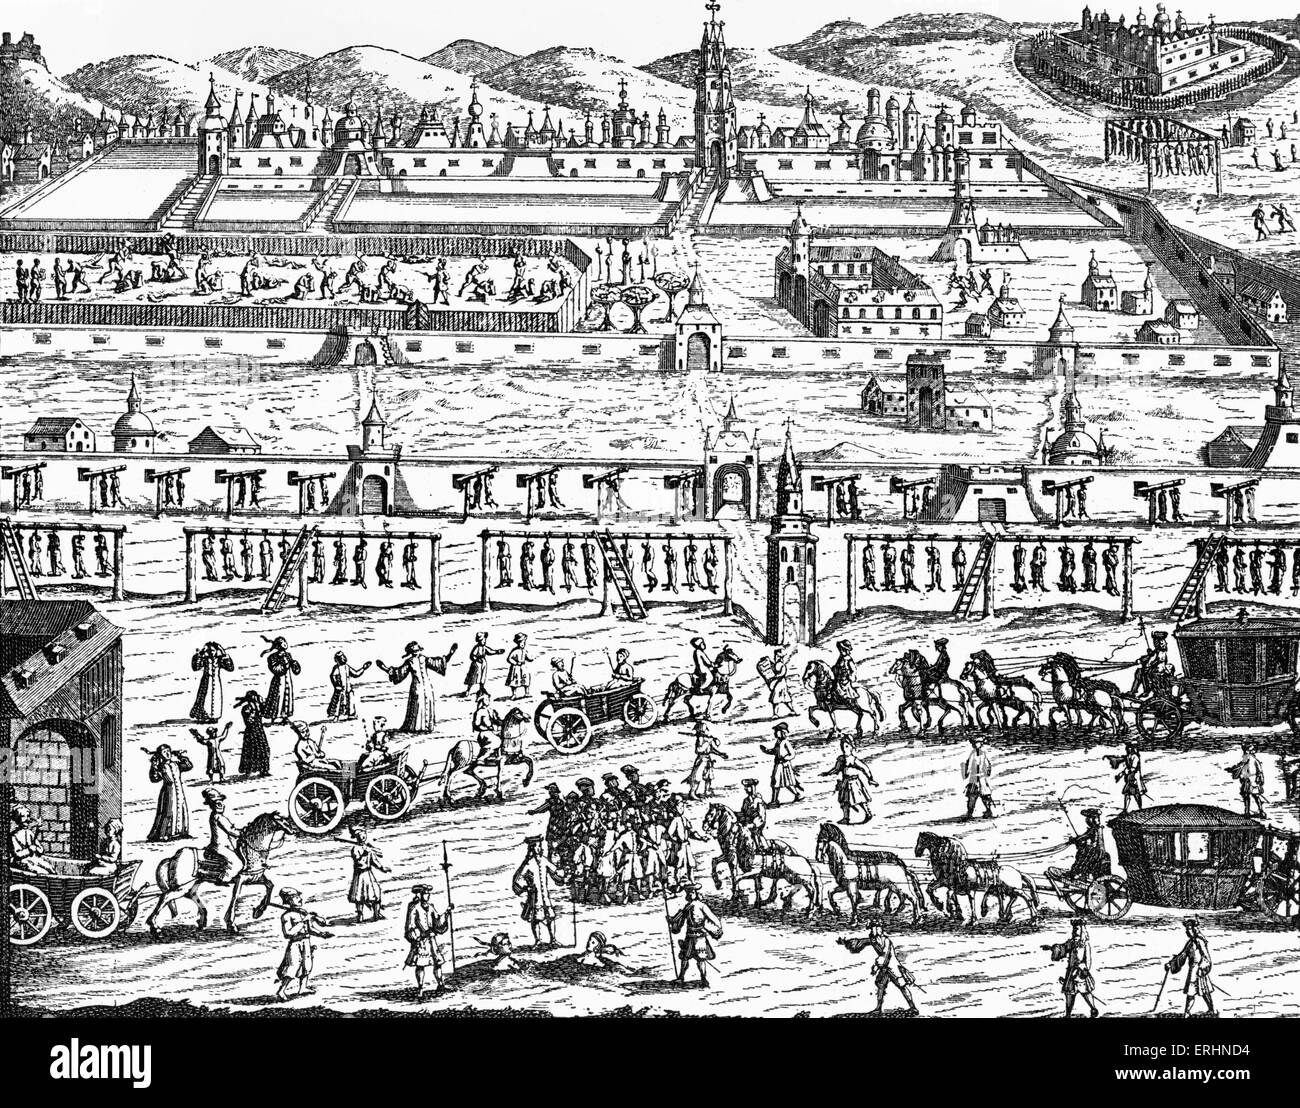 Ausführung der Strelitzen (auch bekannt als die Strelets Truppen), Russland, 1699. Kupferstich von Korb, aus "Diarium Itineris Stockfoto